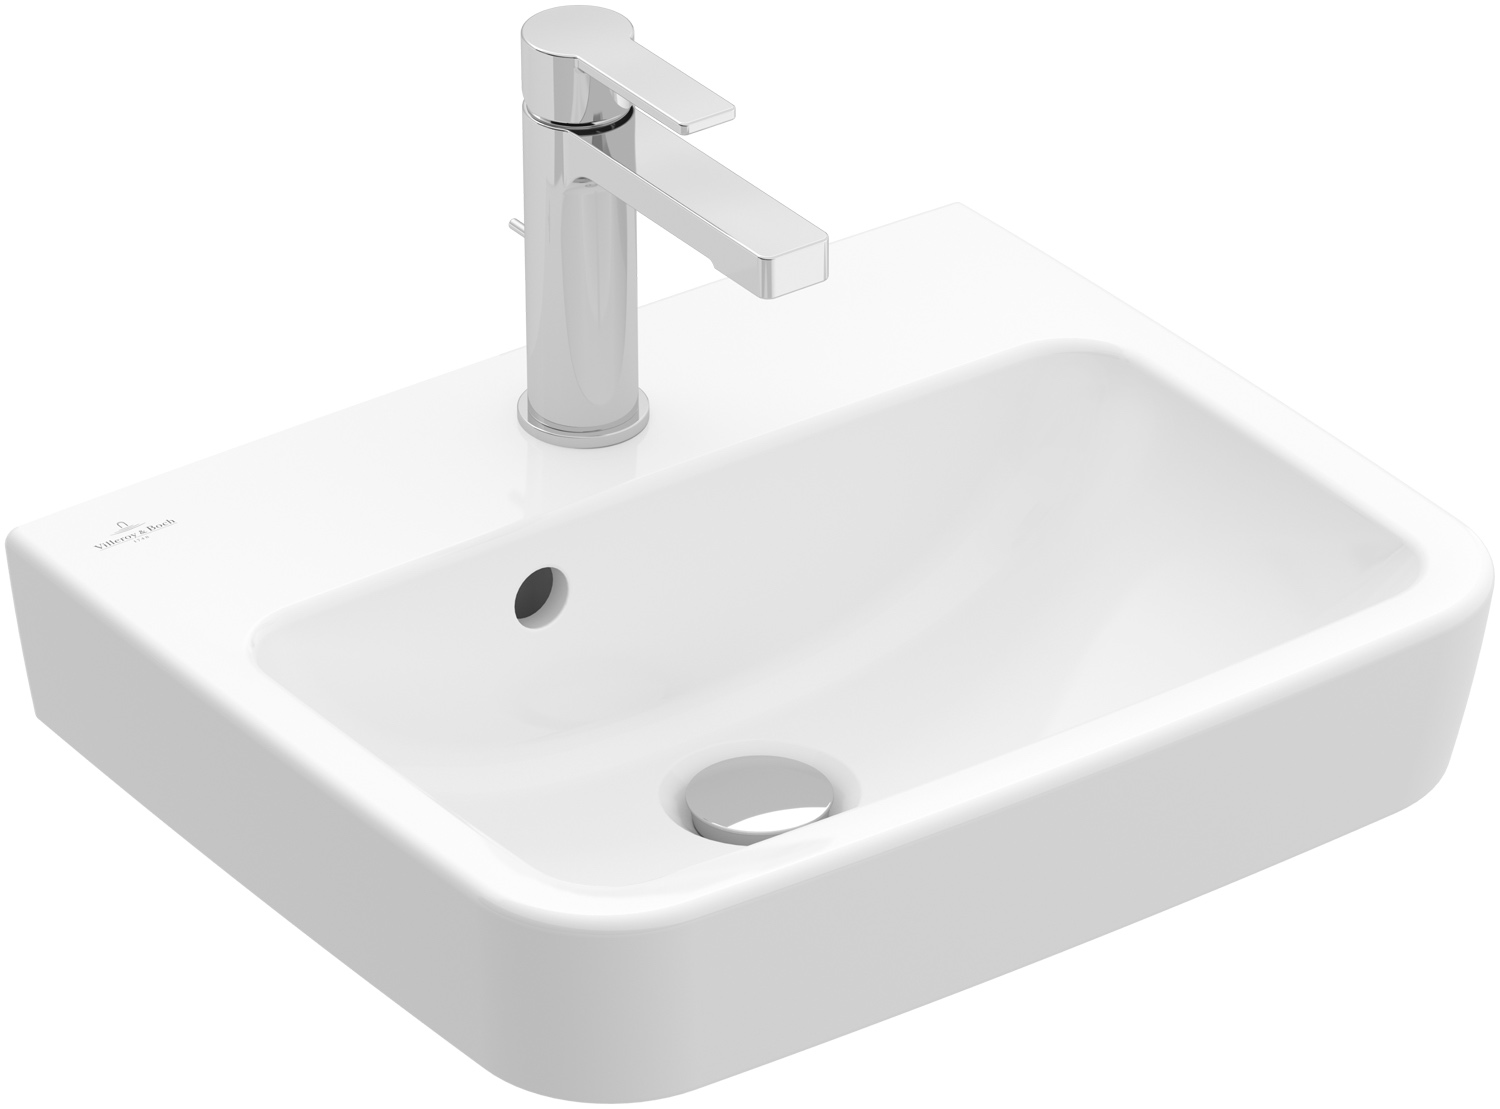 Handwaschbecken O.novo 43444J, 450 x 370 mm, Eckig, Becken mittig, mit Überlauf, Rückseite und Unterseite geschliffen, Weiß Alpin